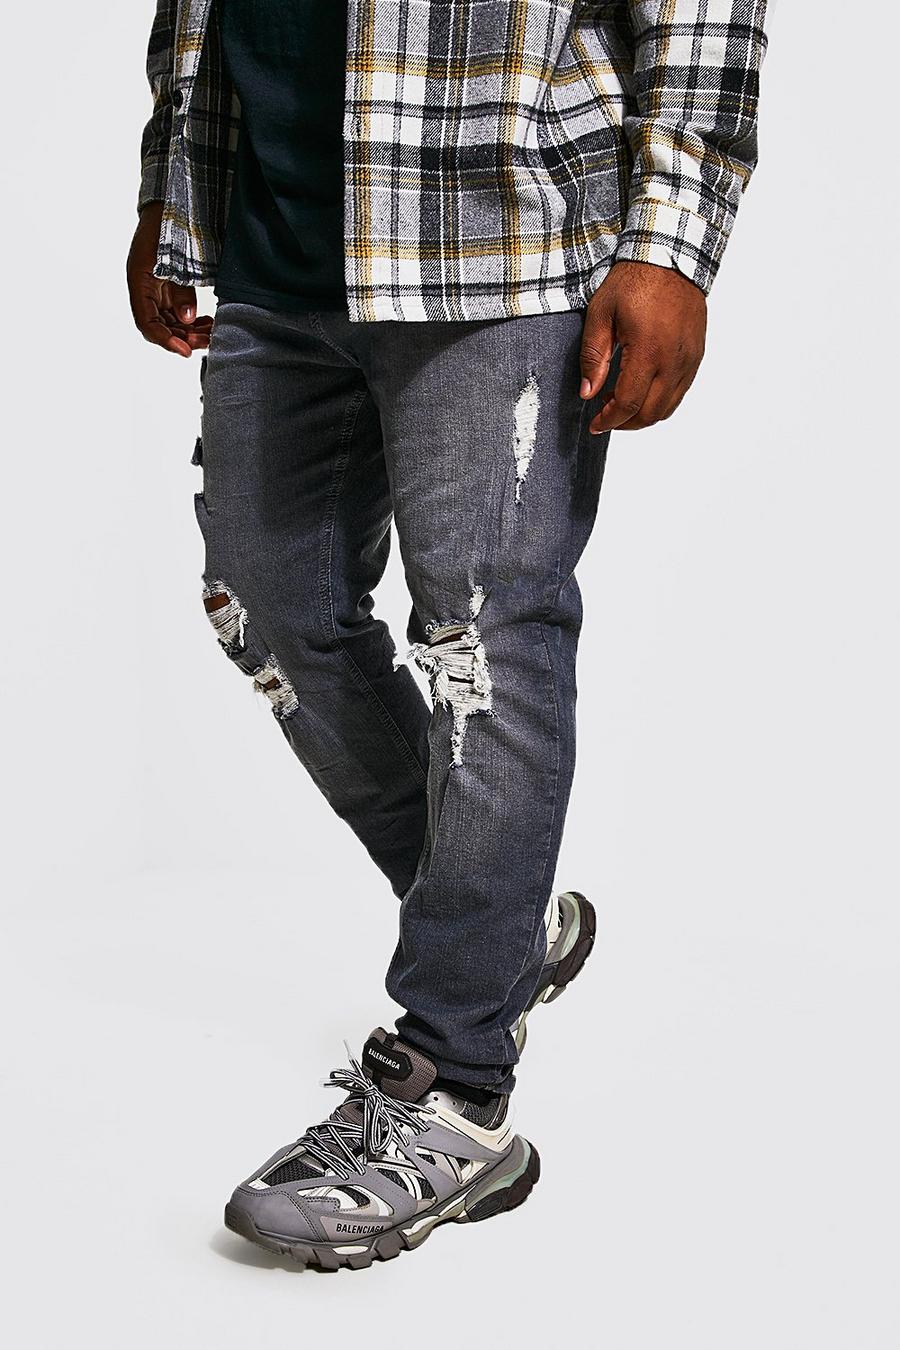 אפור בהיר grigio ג'ינס סופר סקיני עם קרעים מרובים, מידות גדולות